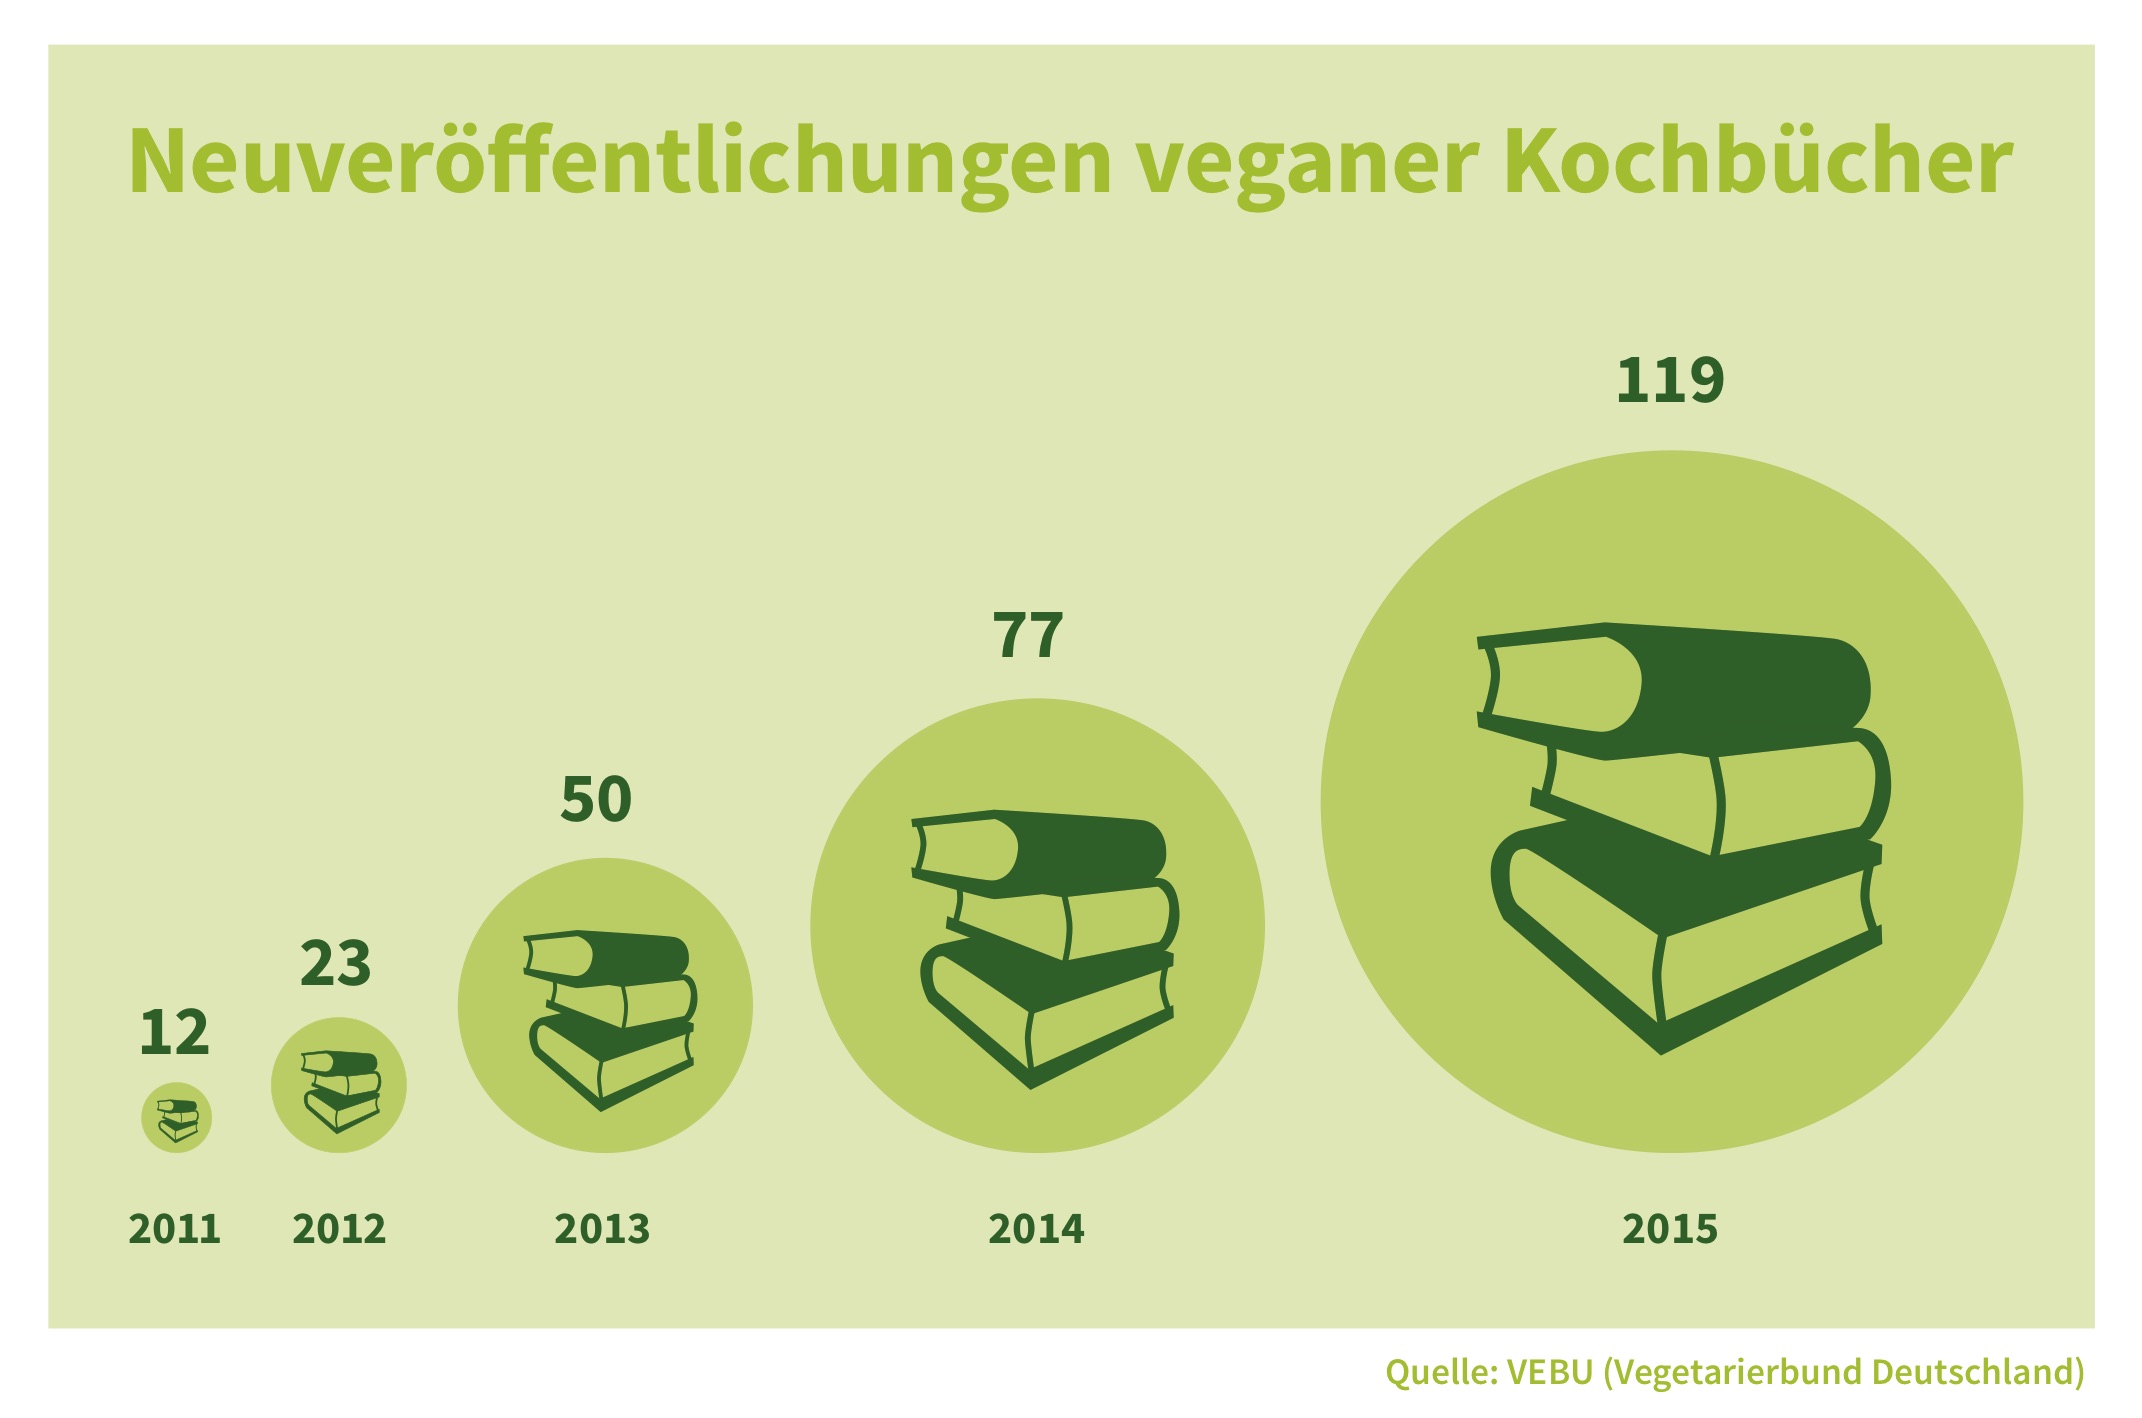 Vegane Kochbücher auf der Frankfurter Buchmesse – 119 Neuveröffentlichungen im Jahr 2015